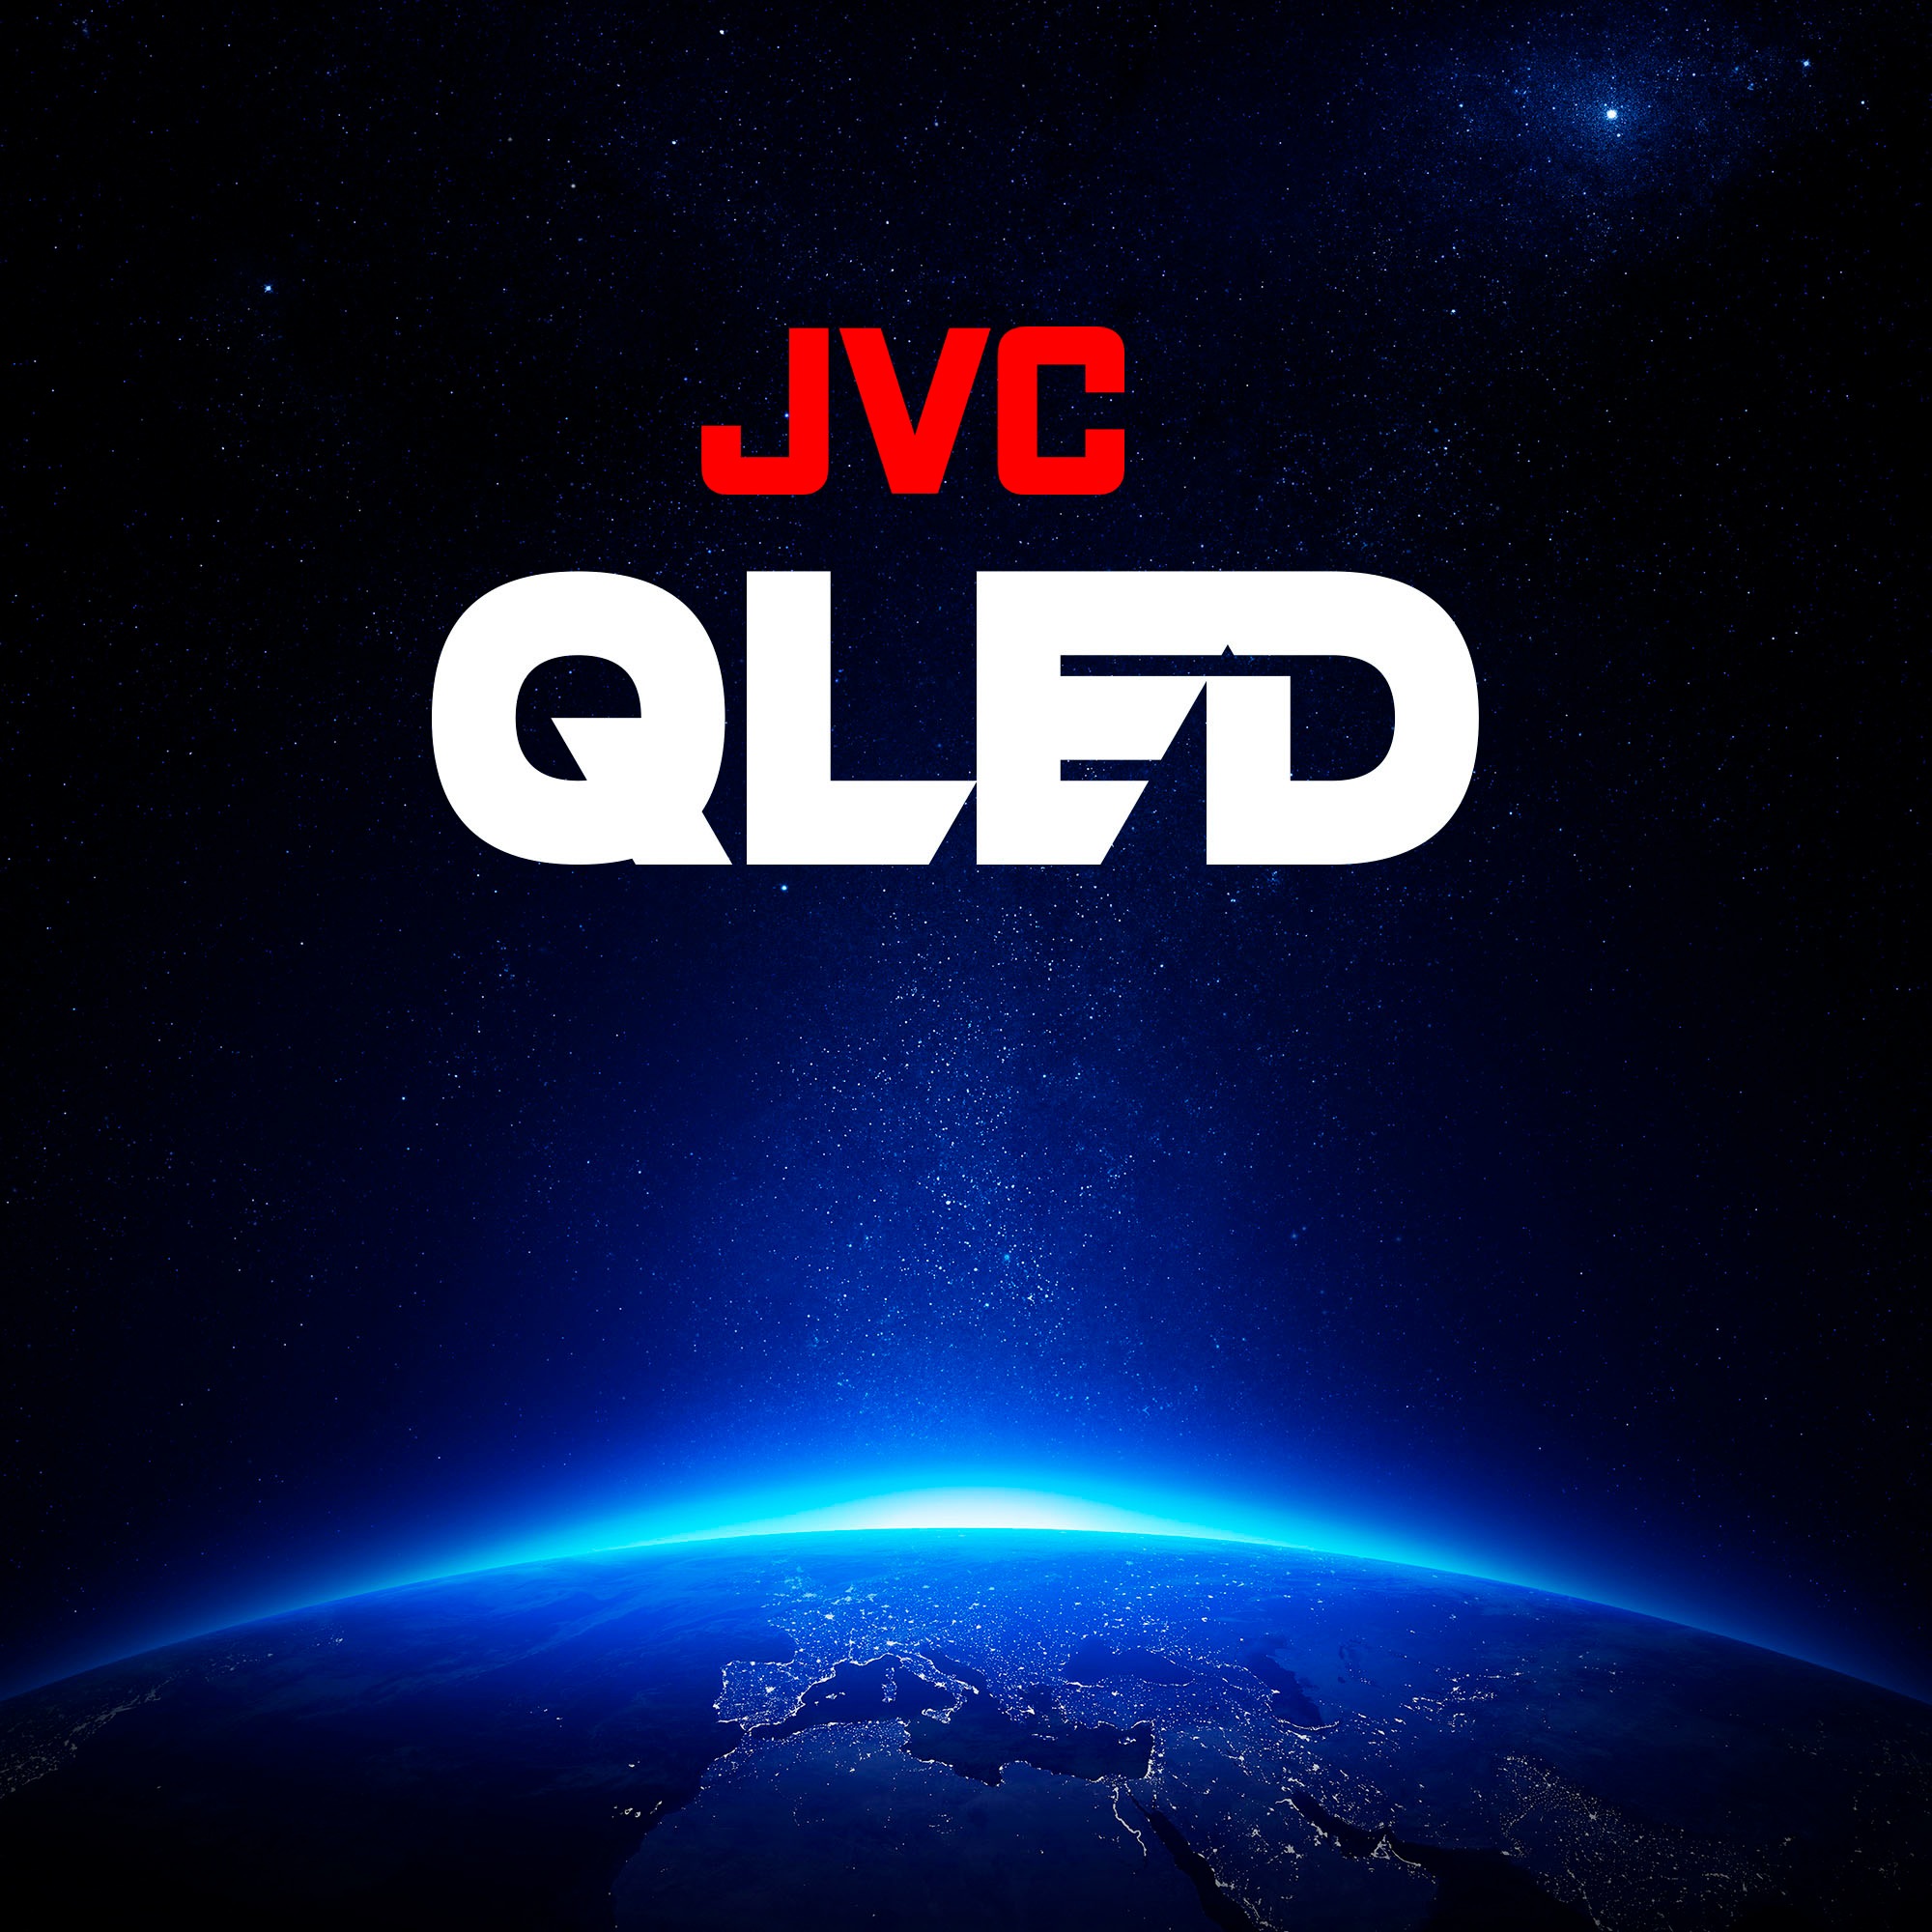 JVC QLED-Fernseher »LT-65VUQ3455«, 164 cm/65 Zoll, 4K Ultra HD, Smart-TV